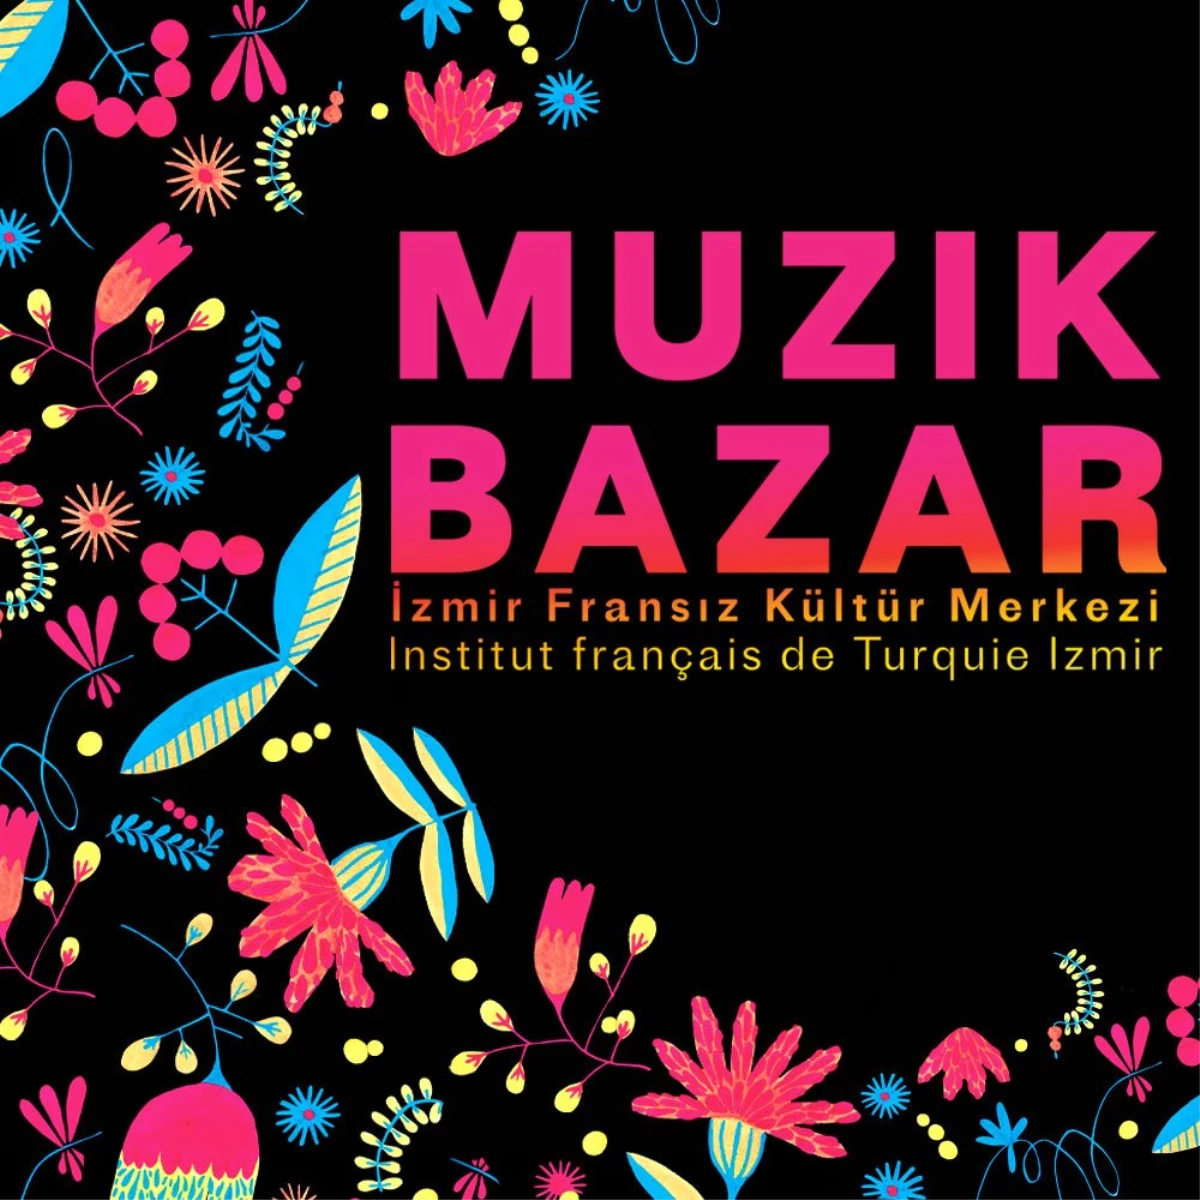 "Muzik Bazaar" festival tadında geçecek